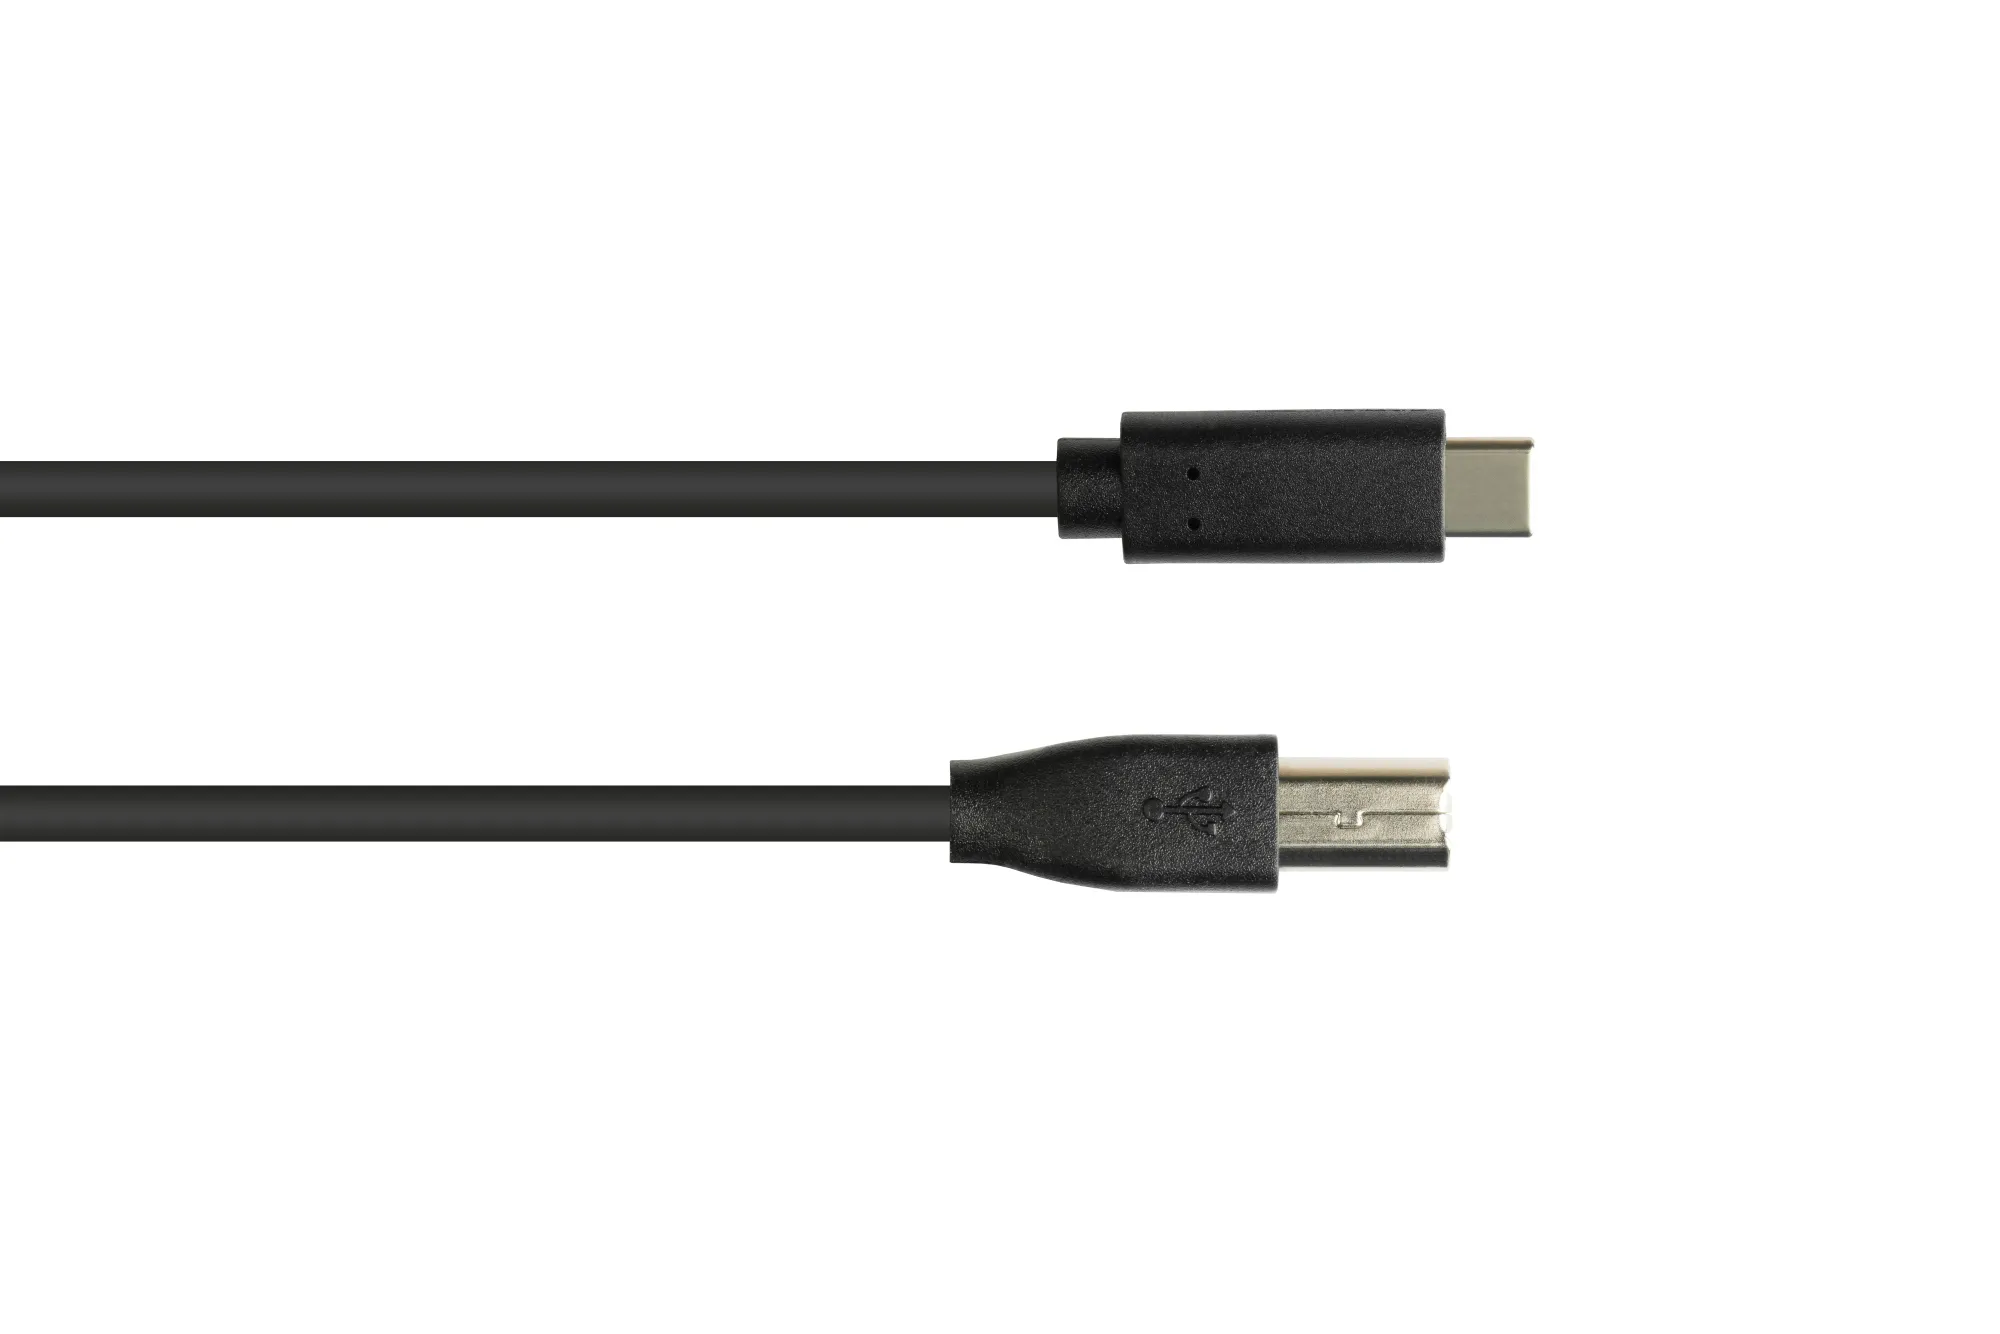 Anschlusskabel USB 2.0, USB-C™ Stecker an USB 2.0 B Stecker, CU, schwarz, 1m, Good Connections®